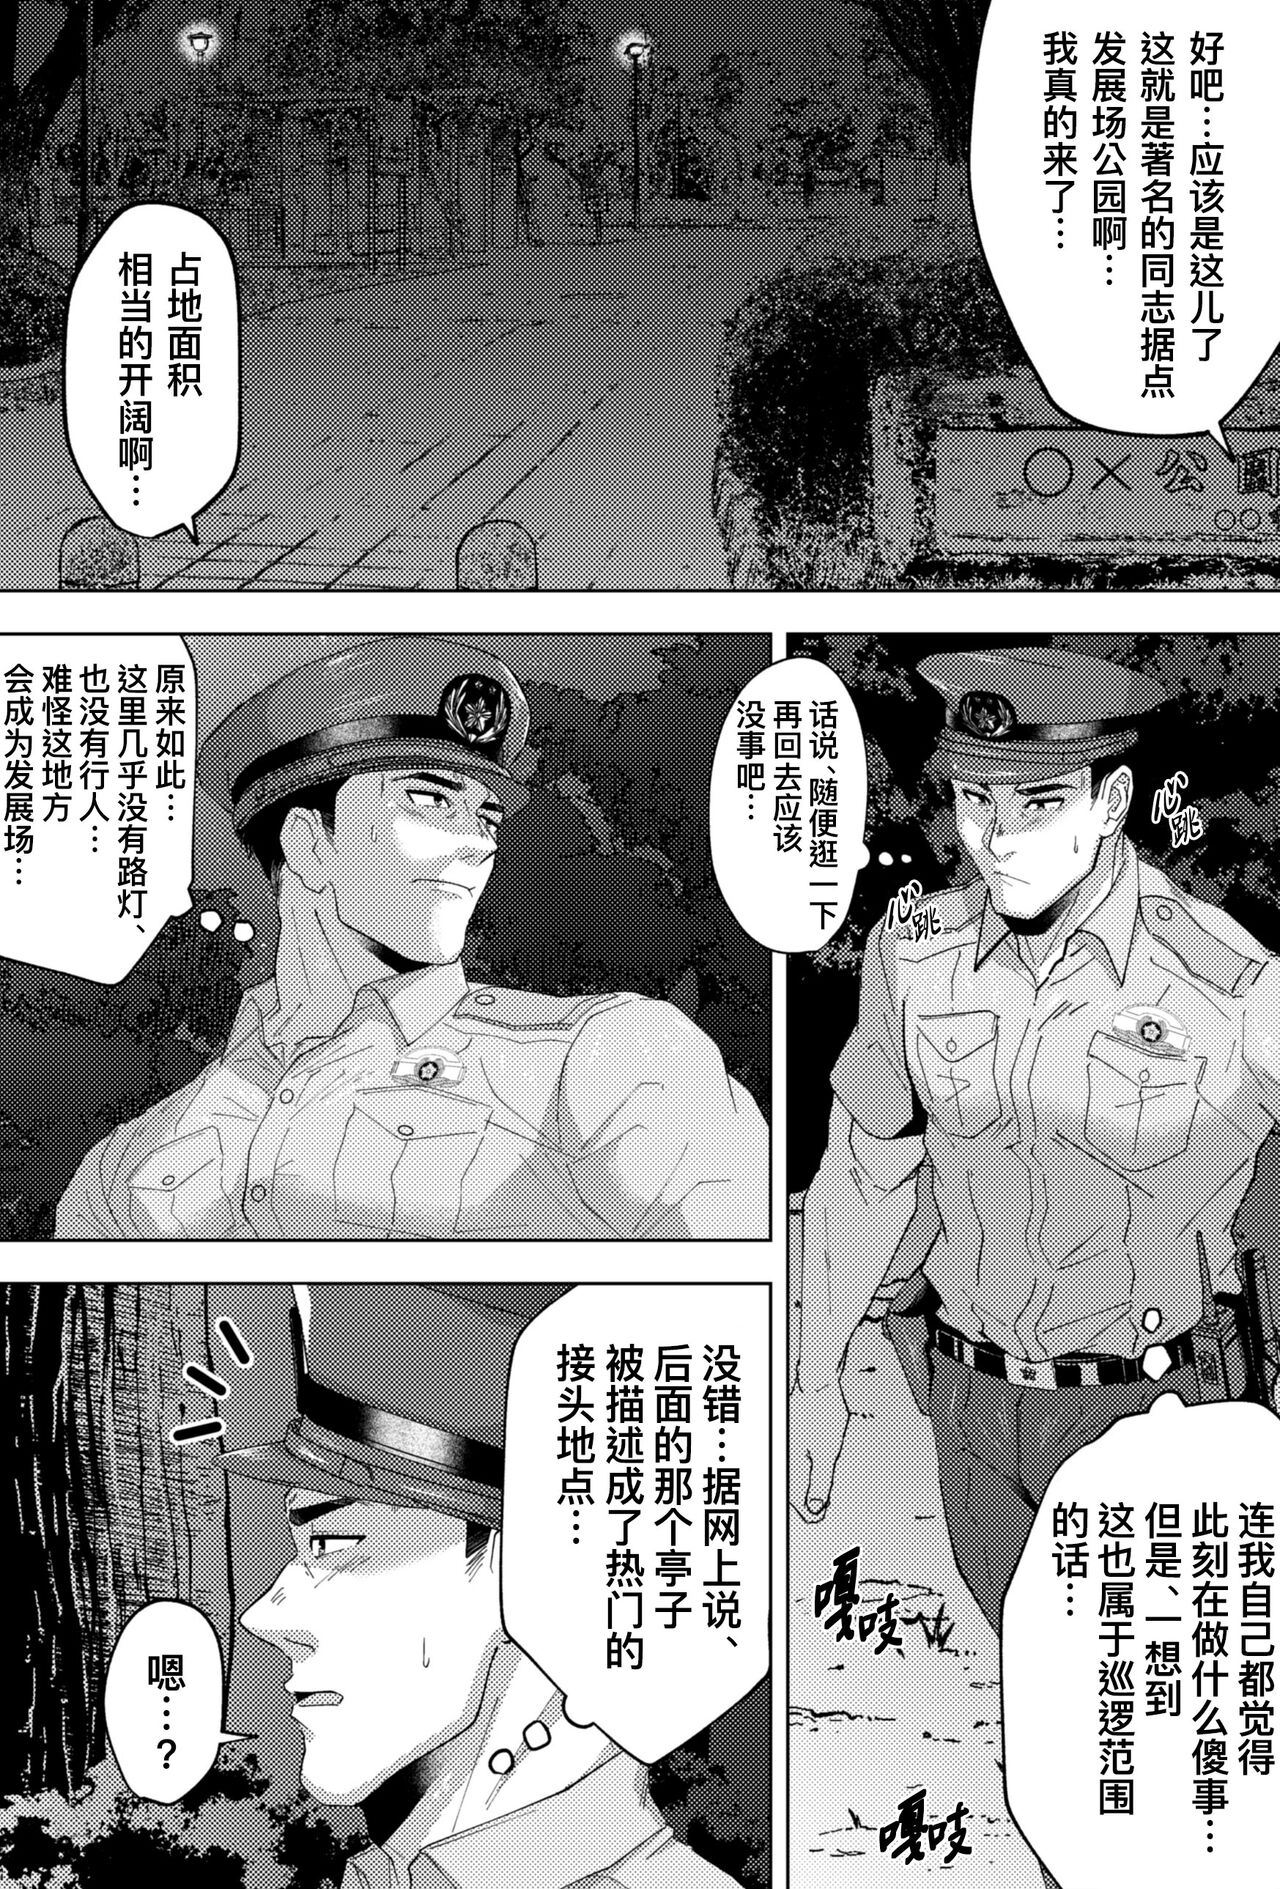 Shiro しろ Xīnrèn Jǐngguān De Tóngzhì Gōngyuán Xúnluó 新任警官的同志公园巡逻